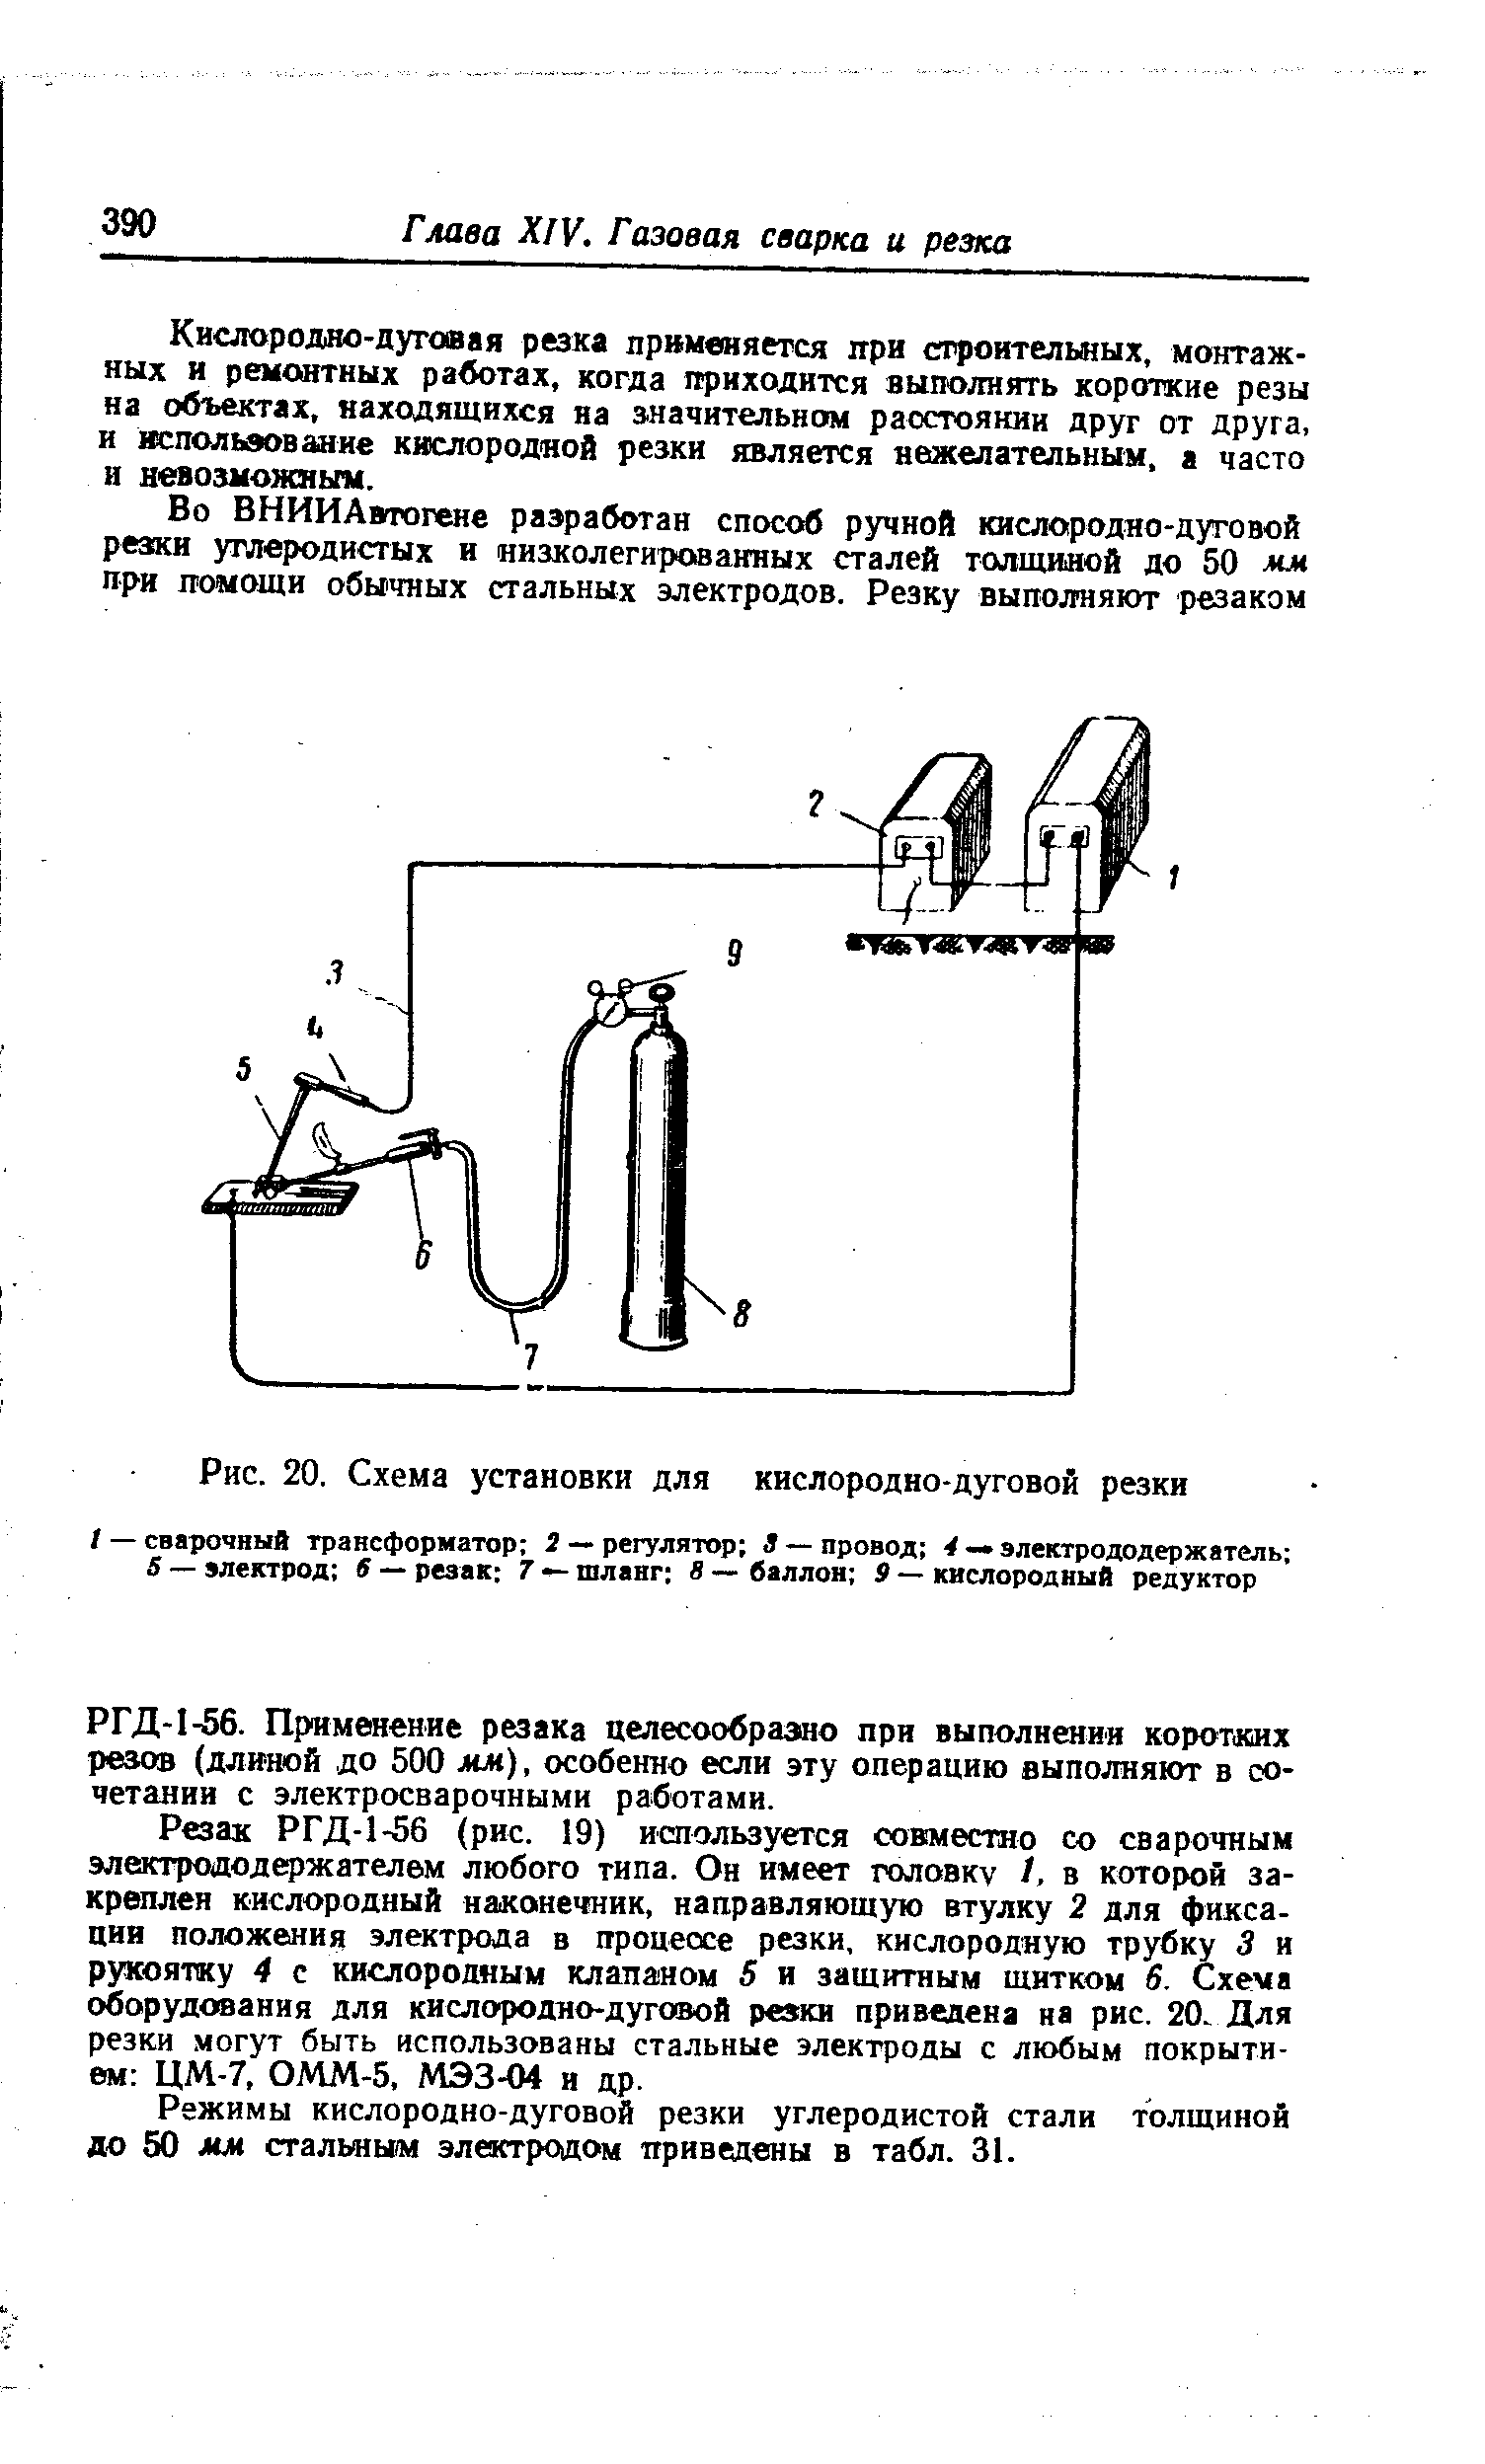 Рис. 20. Схема установки для кислородно-дуговой резки
